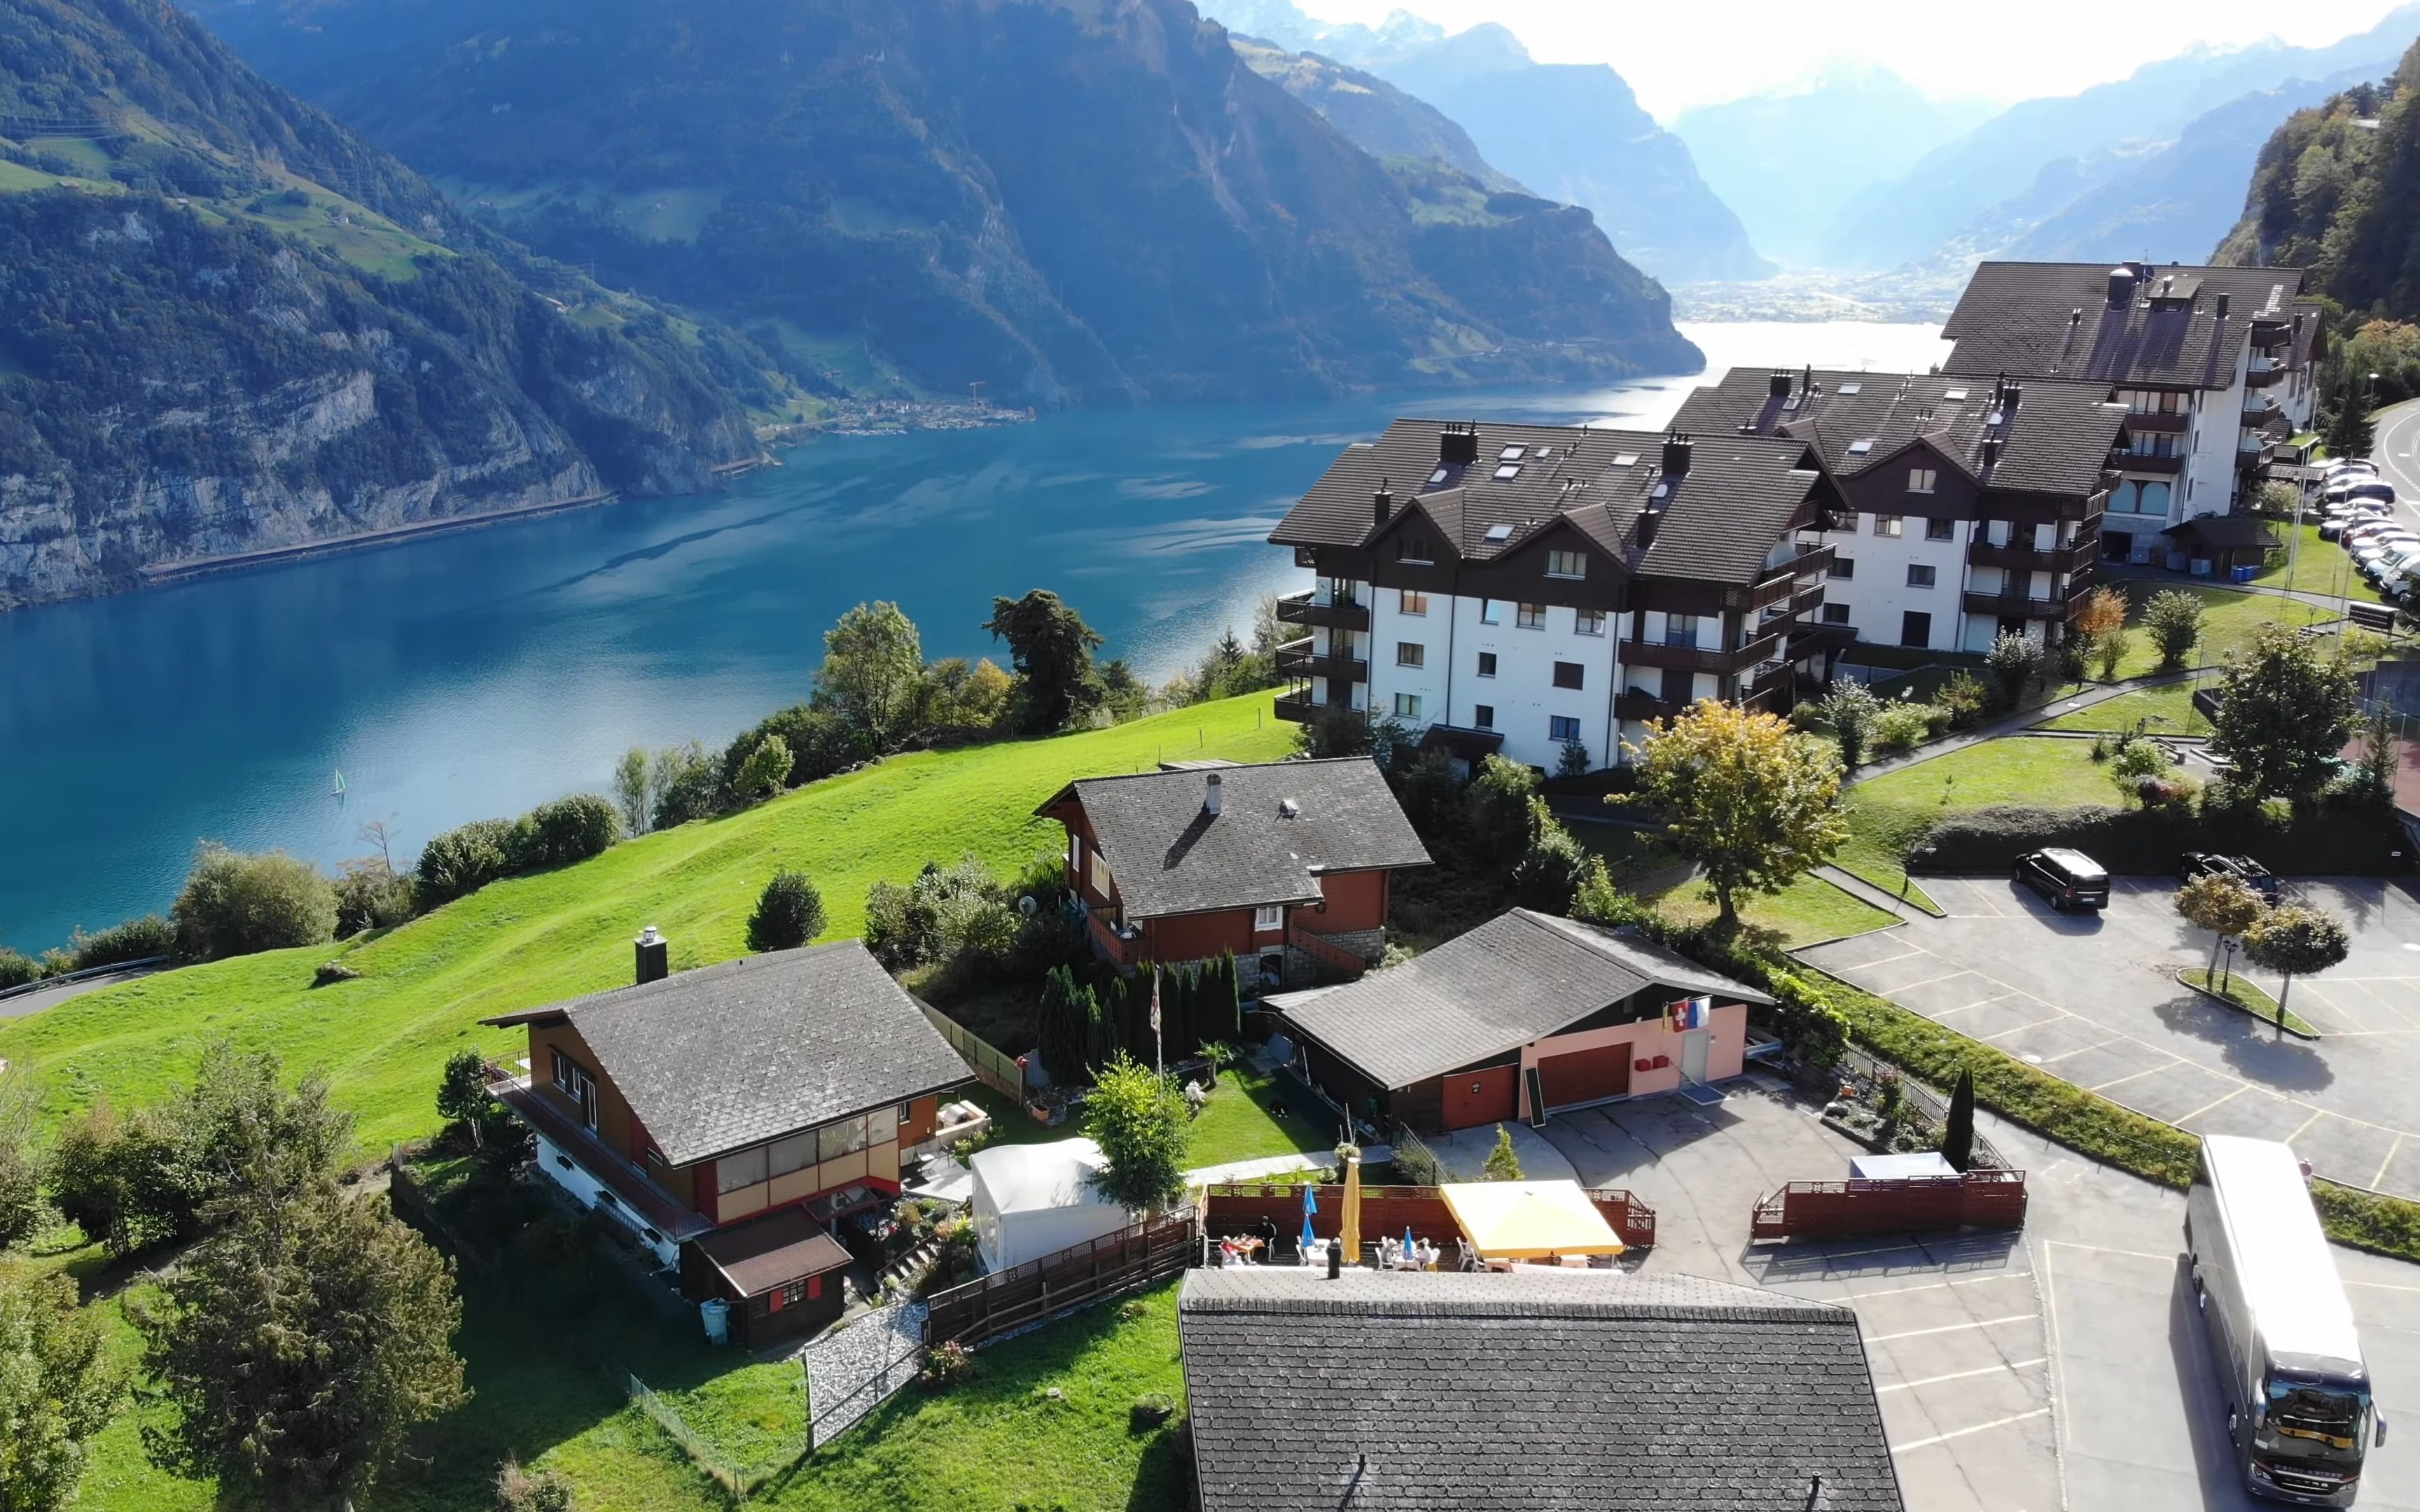 瑞士乡村建筑图片